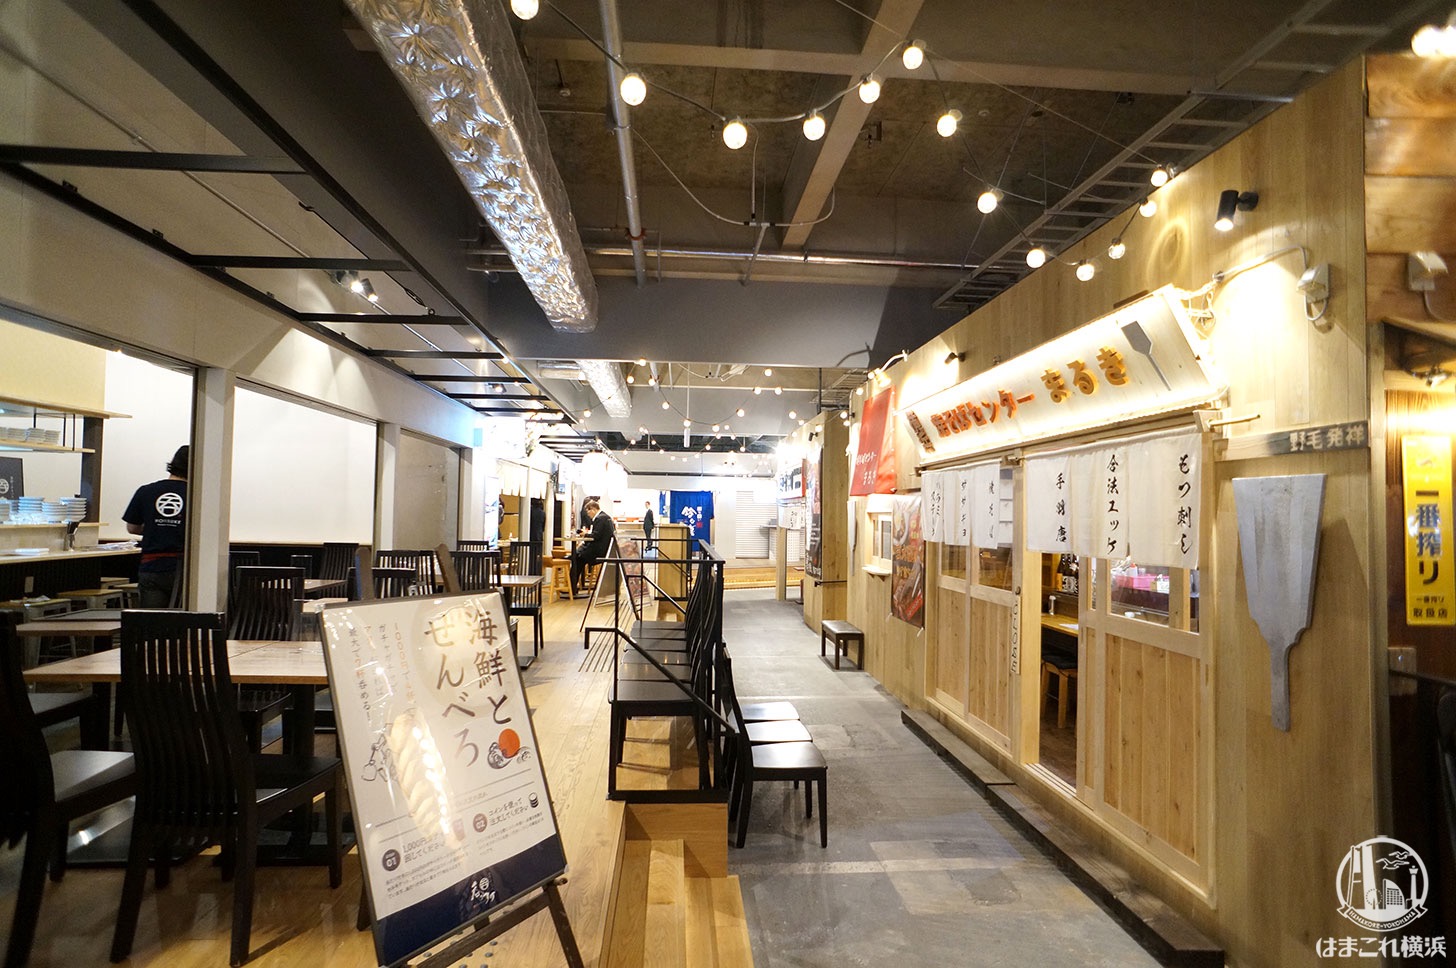 横浜駅「アソビル」飲食店に崎陽軒シウマイBAR、もうやんカレー、丿貫新店舗など